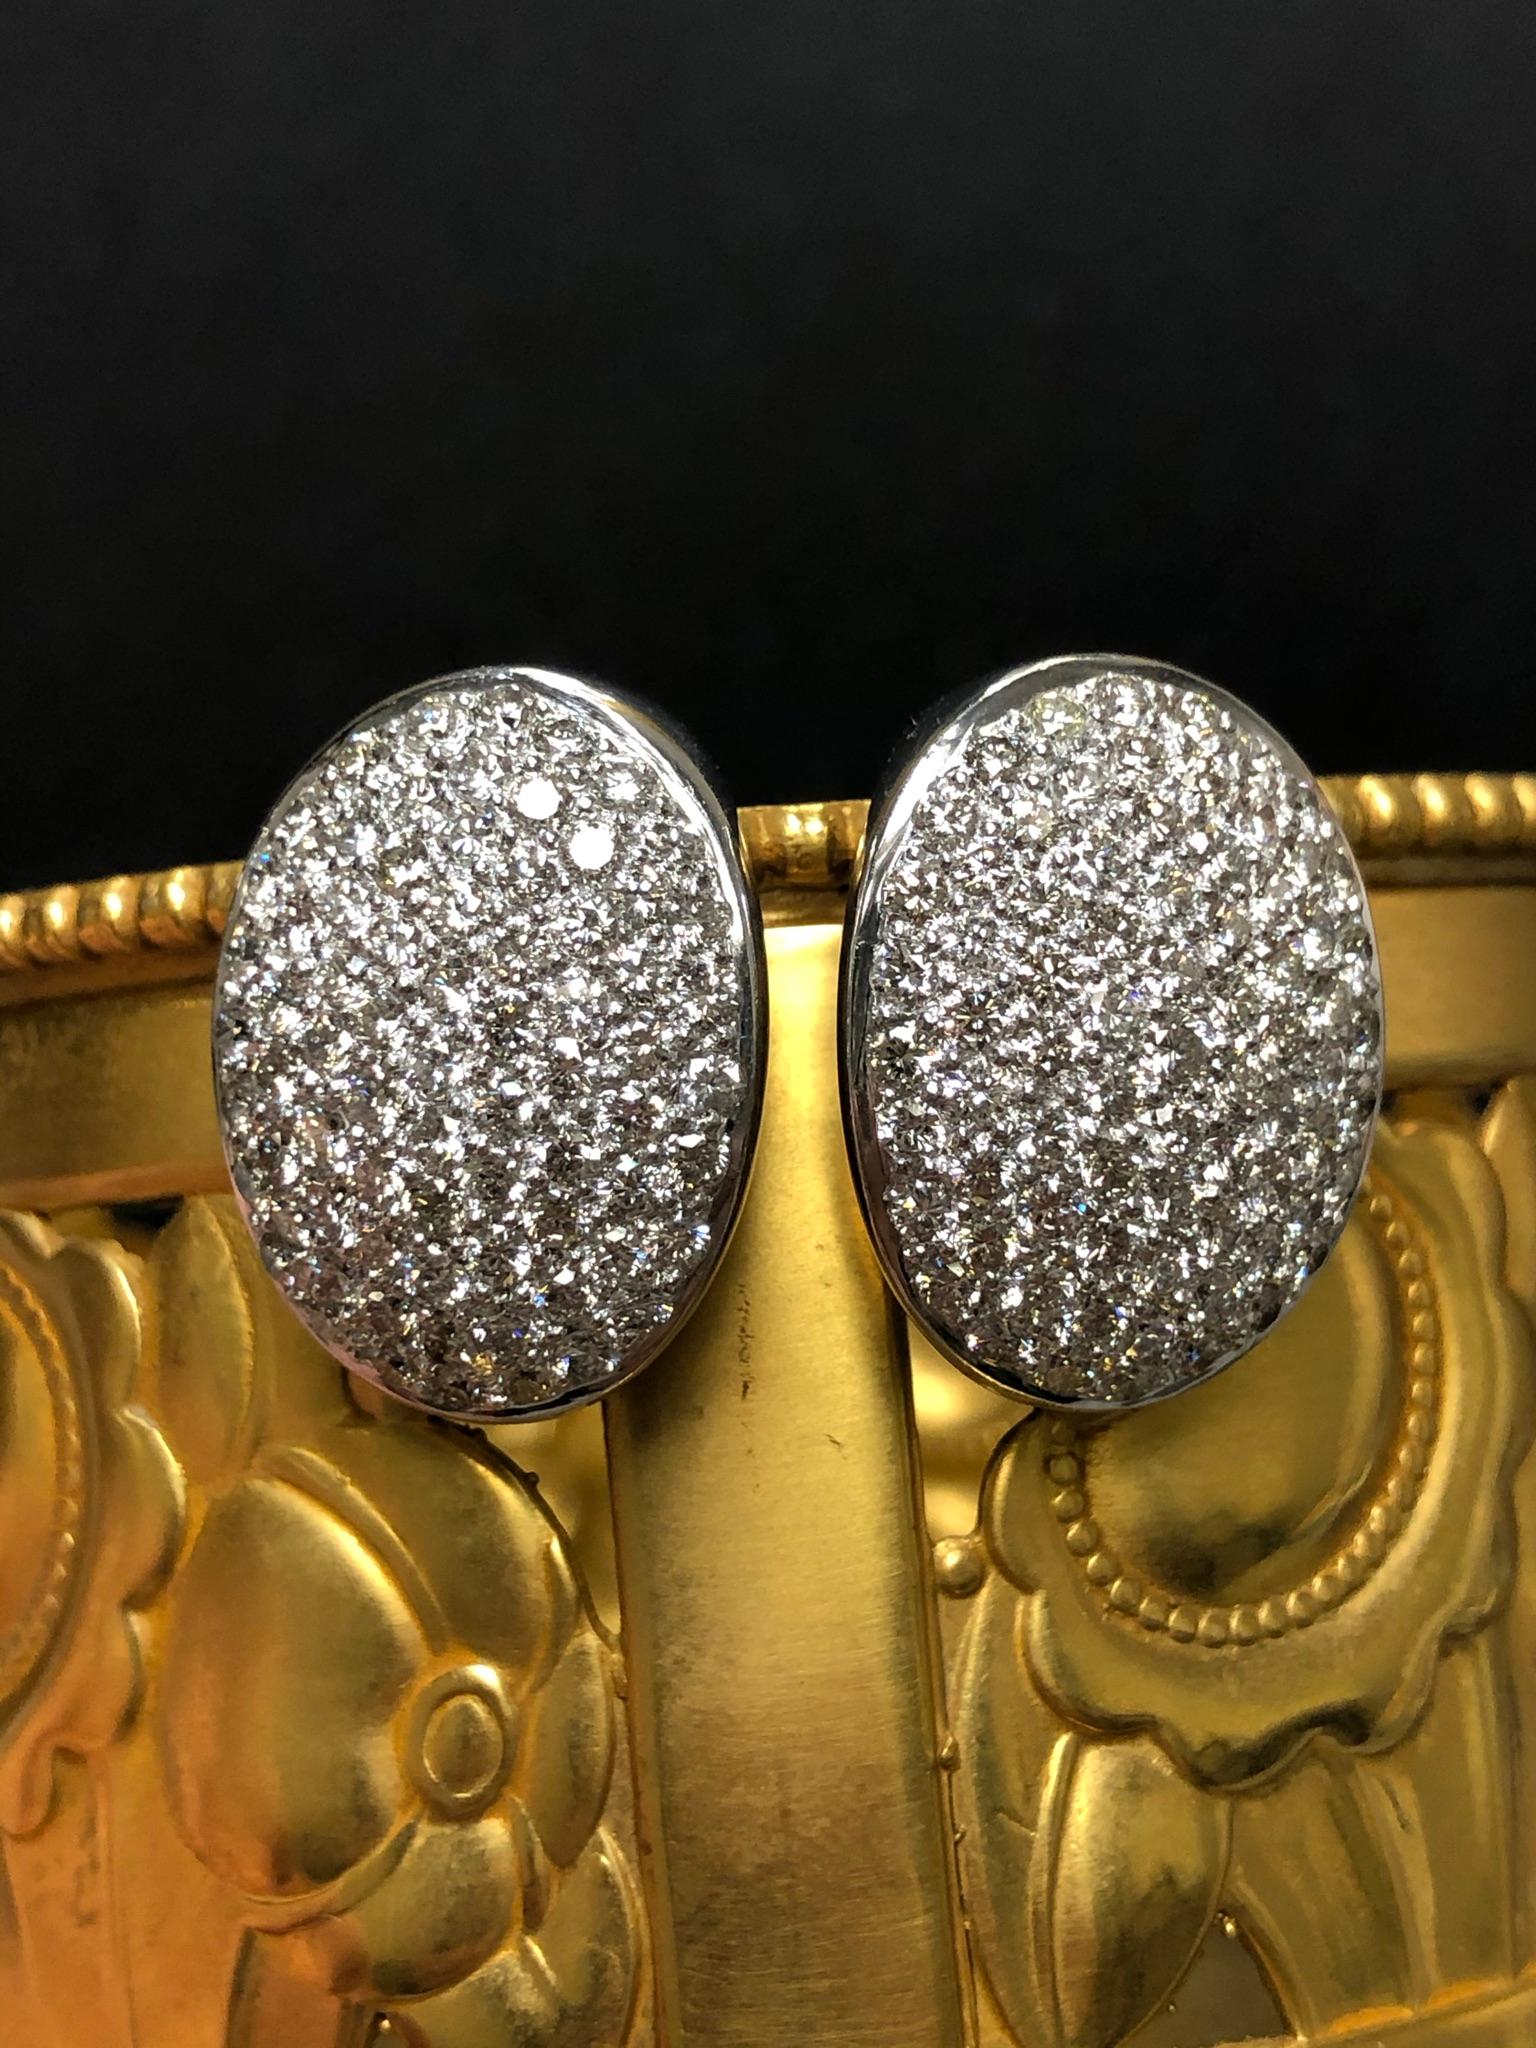 Ein fabelhaft gut gemacht Paar Pave-Diamant-Ohrringe in 18K Weißgold mit etwa 5cttw in G-I Farbe Vs1-2 Klarheit runde Diamanten gesetzt getan. Sie haben Pfosten mit Omega-Rücken. Diese Ohrringe sind ein echter Hingucker!

Abmessungen/Gewicht:
Sie